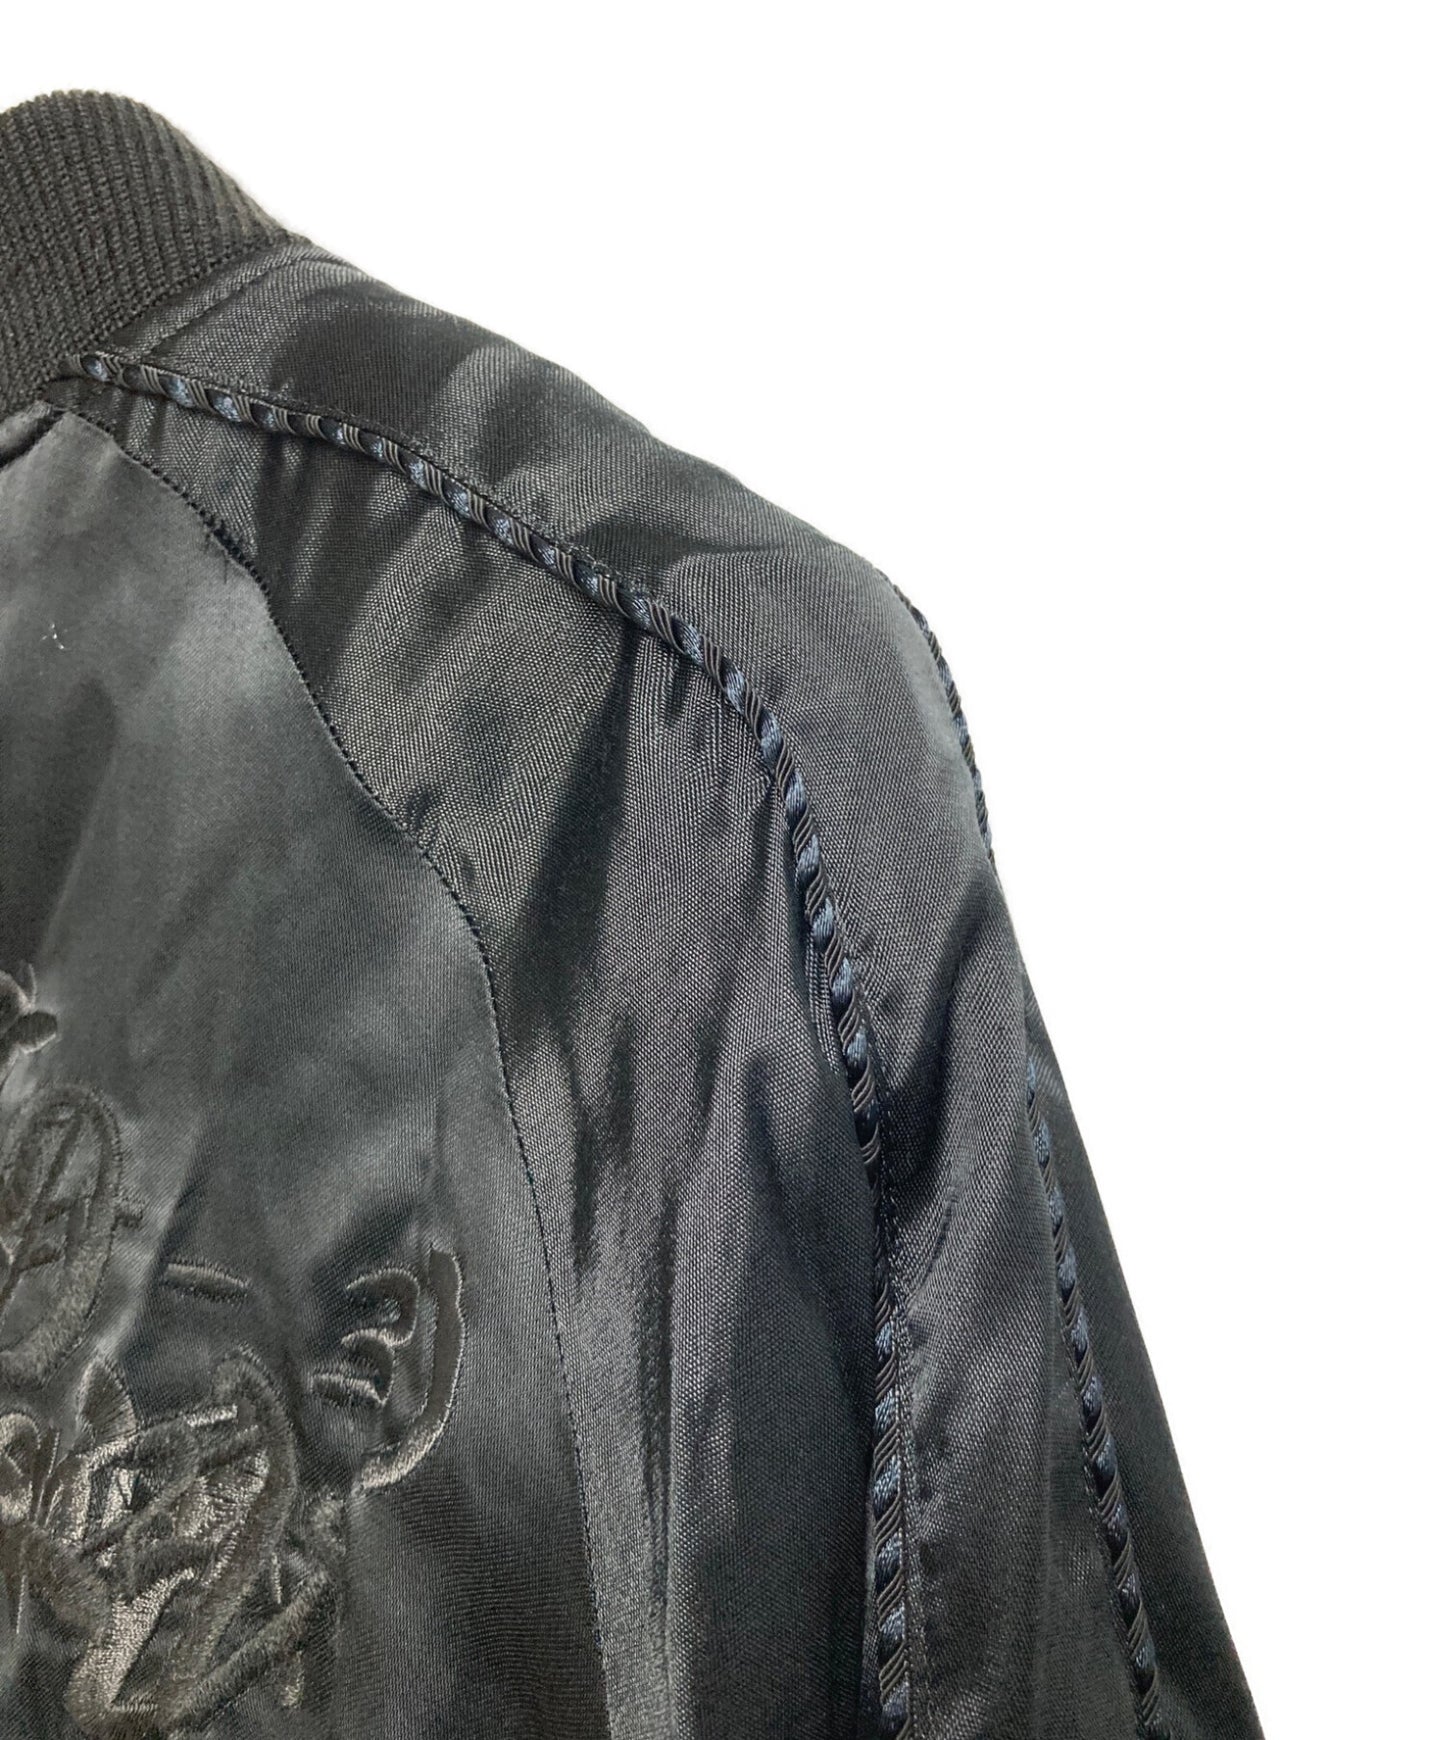 [Pre-owned] doublet souvenir jacket 19AW04DSM05